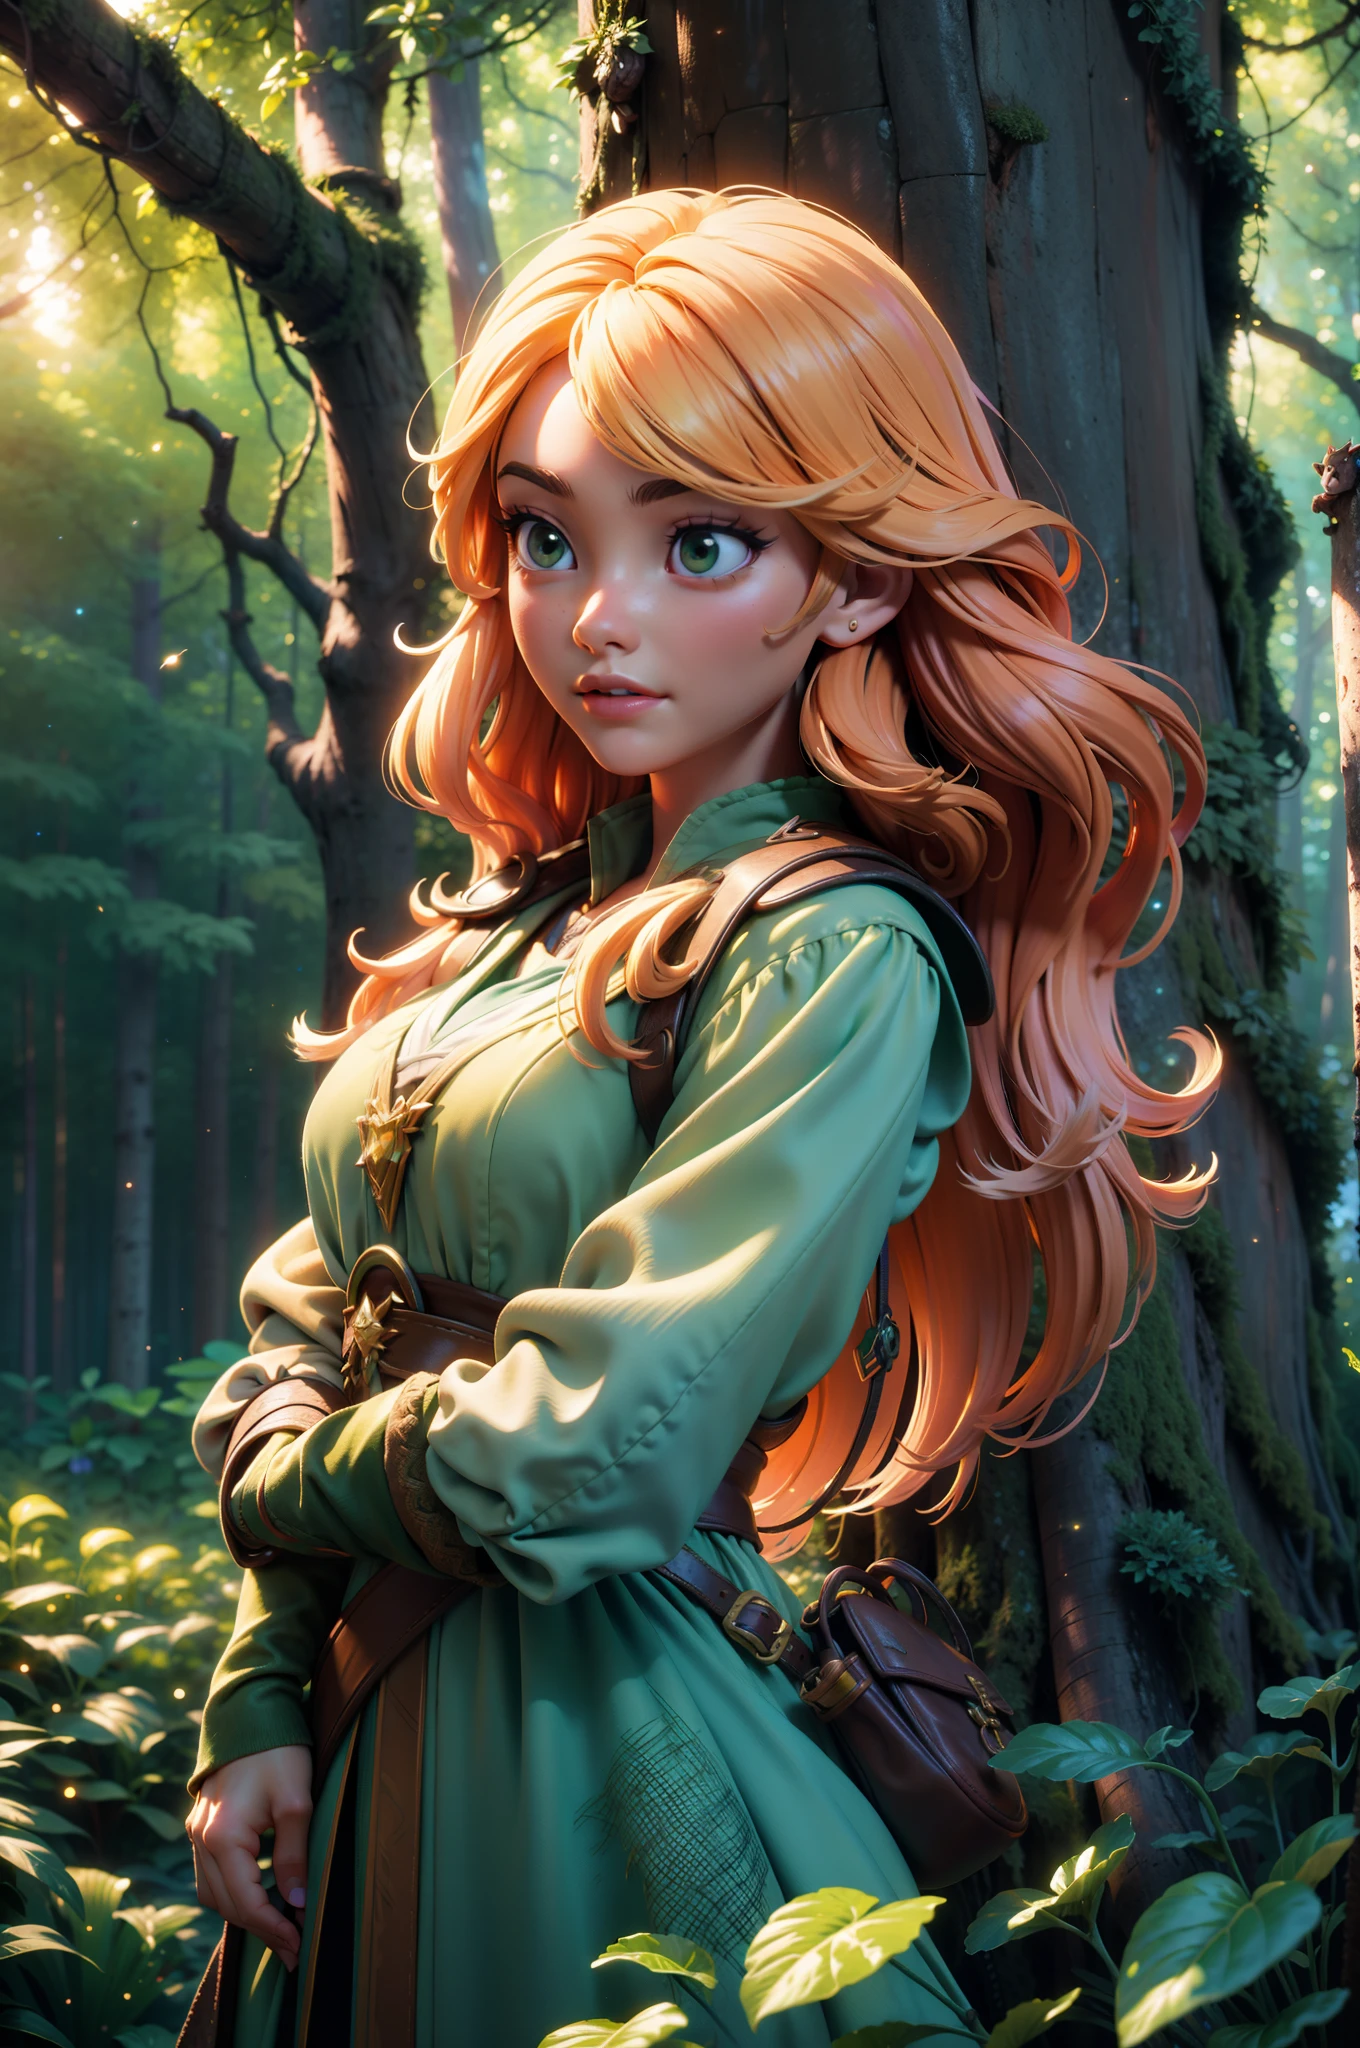 ギルド冒険者の衣装を着た美しい長髪の少女を捉えた傑作.  彼女は魅惑的な森の中にいる, 環境の要素と相互作用する.  前景は明るい, ぼやけた葉, beautiful colorful フラワーズ and fireflies.  背景の風景には光る茂みが描かれている, 草, フラワーズ, 光る木々と地面のリス.  長い髪と冒険的な服を着た美しい女の子もこの計画の一部です.  背景は濃い緑の森で構成されている.  構成は立体的である, 超高品質を提供する, 最大16K解像度とアニメスタイル.  3Dの視点を強調し、ダイナミックで自然な芸術作品を作成します.  カメラはダイナミックなアングルを使ってシーンを巧みに捉えている, 神秘的な雰囲気を高める.  柔らかな照明, 映画的なタッチで, シーンに魔法の雰囲気を添える, 青などの要素, 緑と黄色の明るさ, 柔らかさと粒子が創造的でダイナミックなタッチを加えます.  ミネラルトーン, オクタンレンダリングとプロのポストプロダクションにより、シーンにユニークで洗練されたスタイルが加わります。.